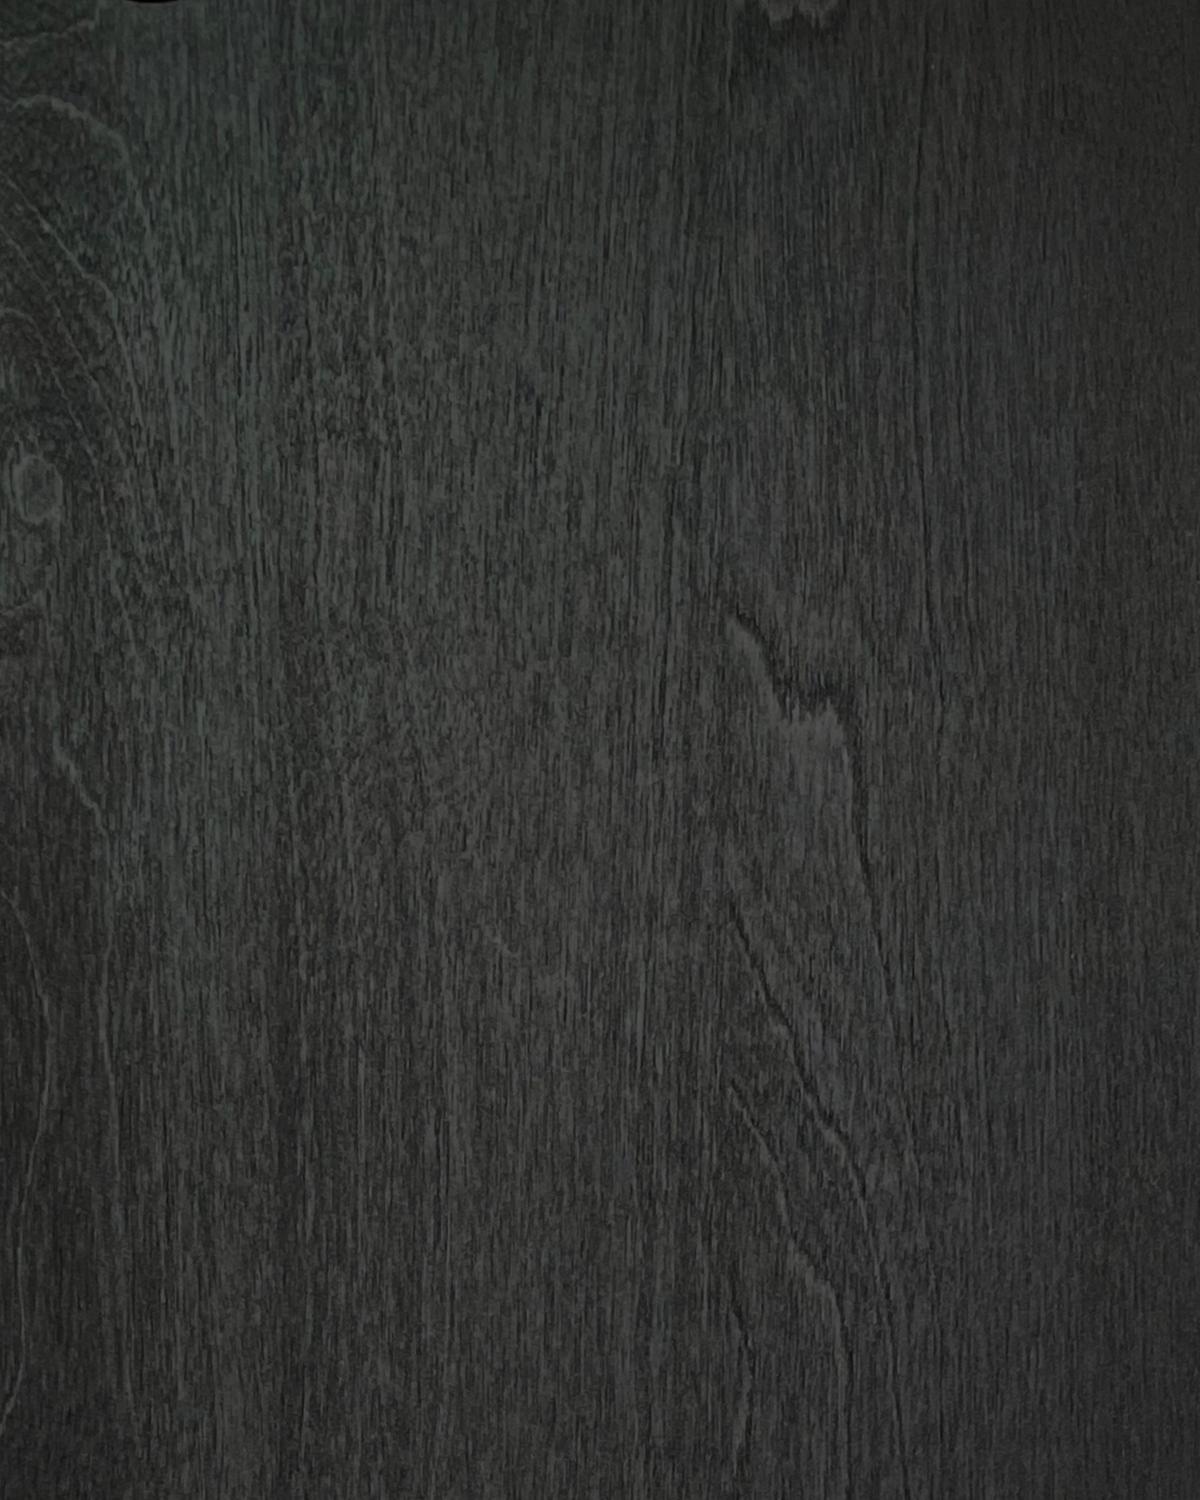 Cadre de tissage 
Buffet, en bois massif et placage stratifié. À la fois moderne et classique, audacieuse et modeste, cette armoire est un excellent exemple de design scandinave contemporain. Conçu par Lukas Dahlén.

Le buffet minimaliste mais